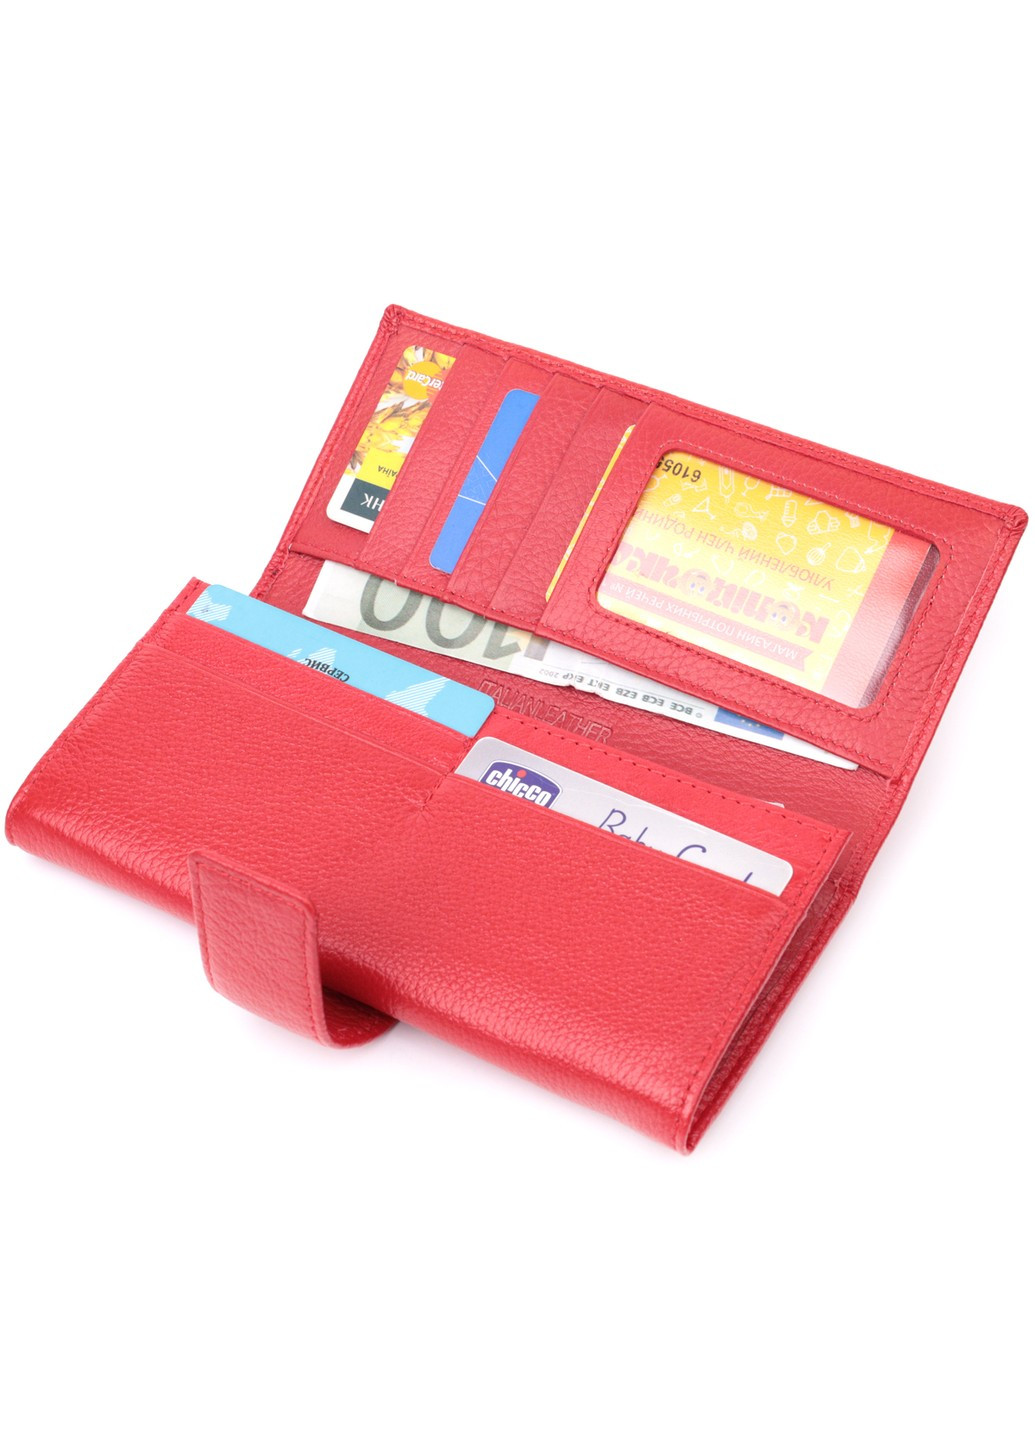 Женский кошелек на четыре отделения для купюр из натуральной кожи 22549 Красный st leather (277980567)